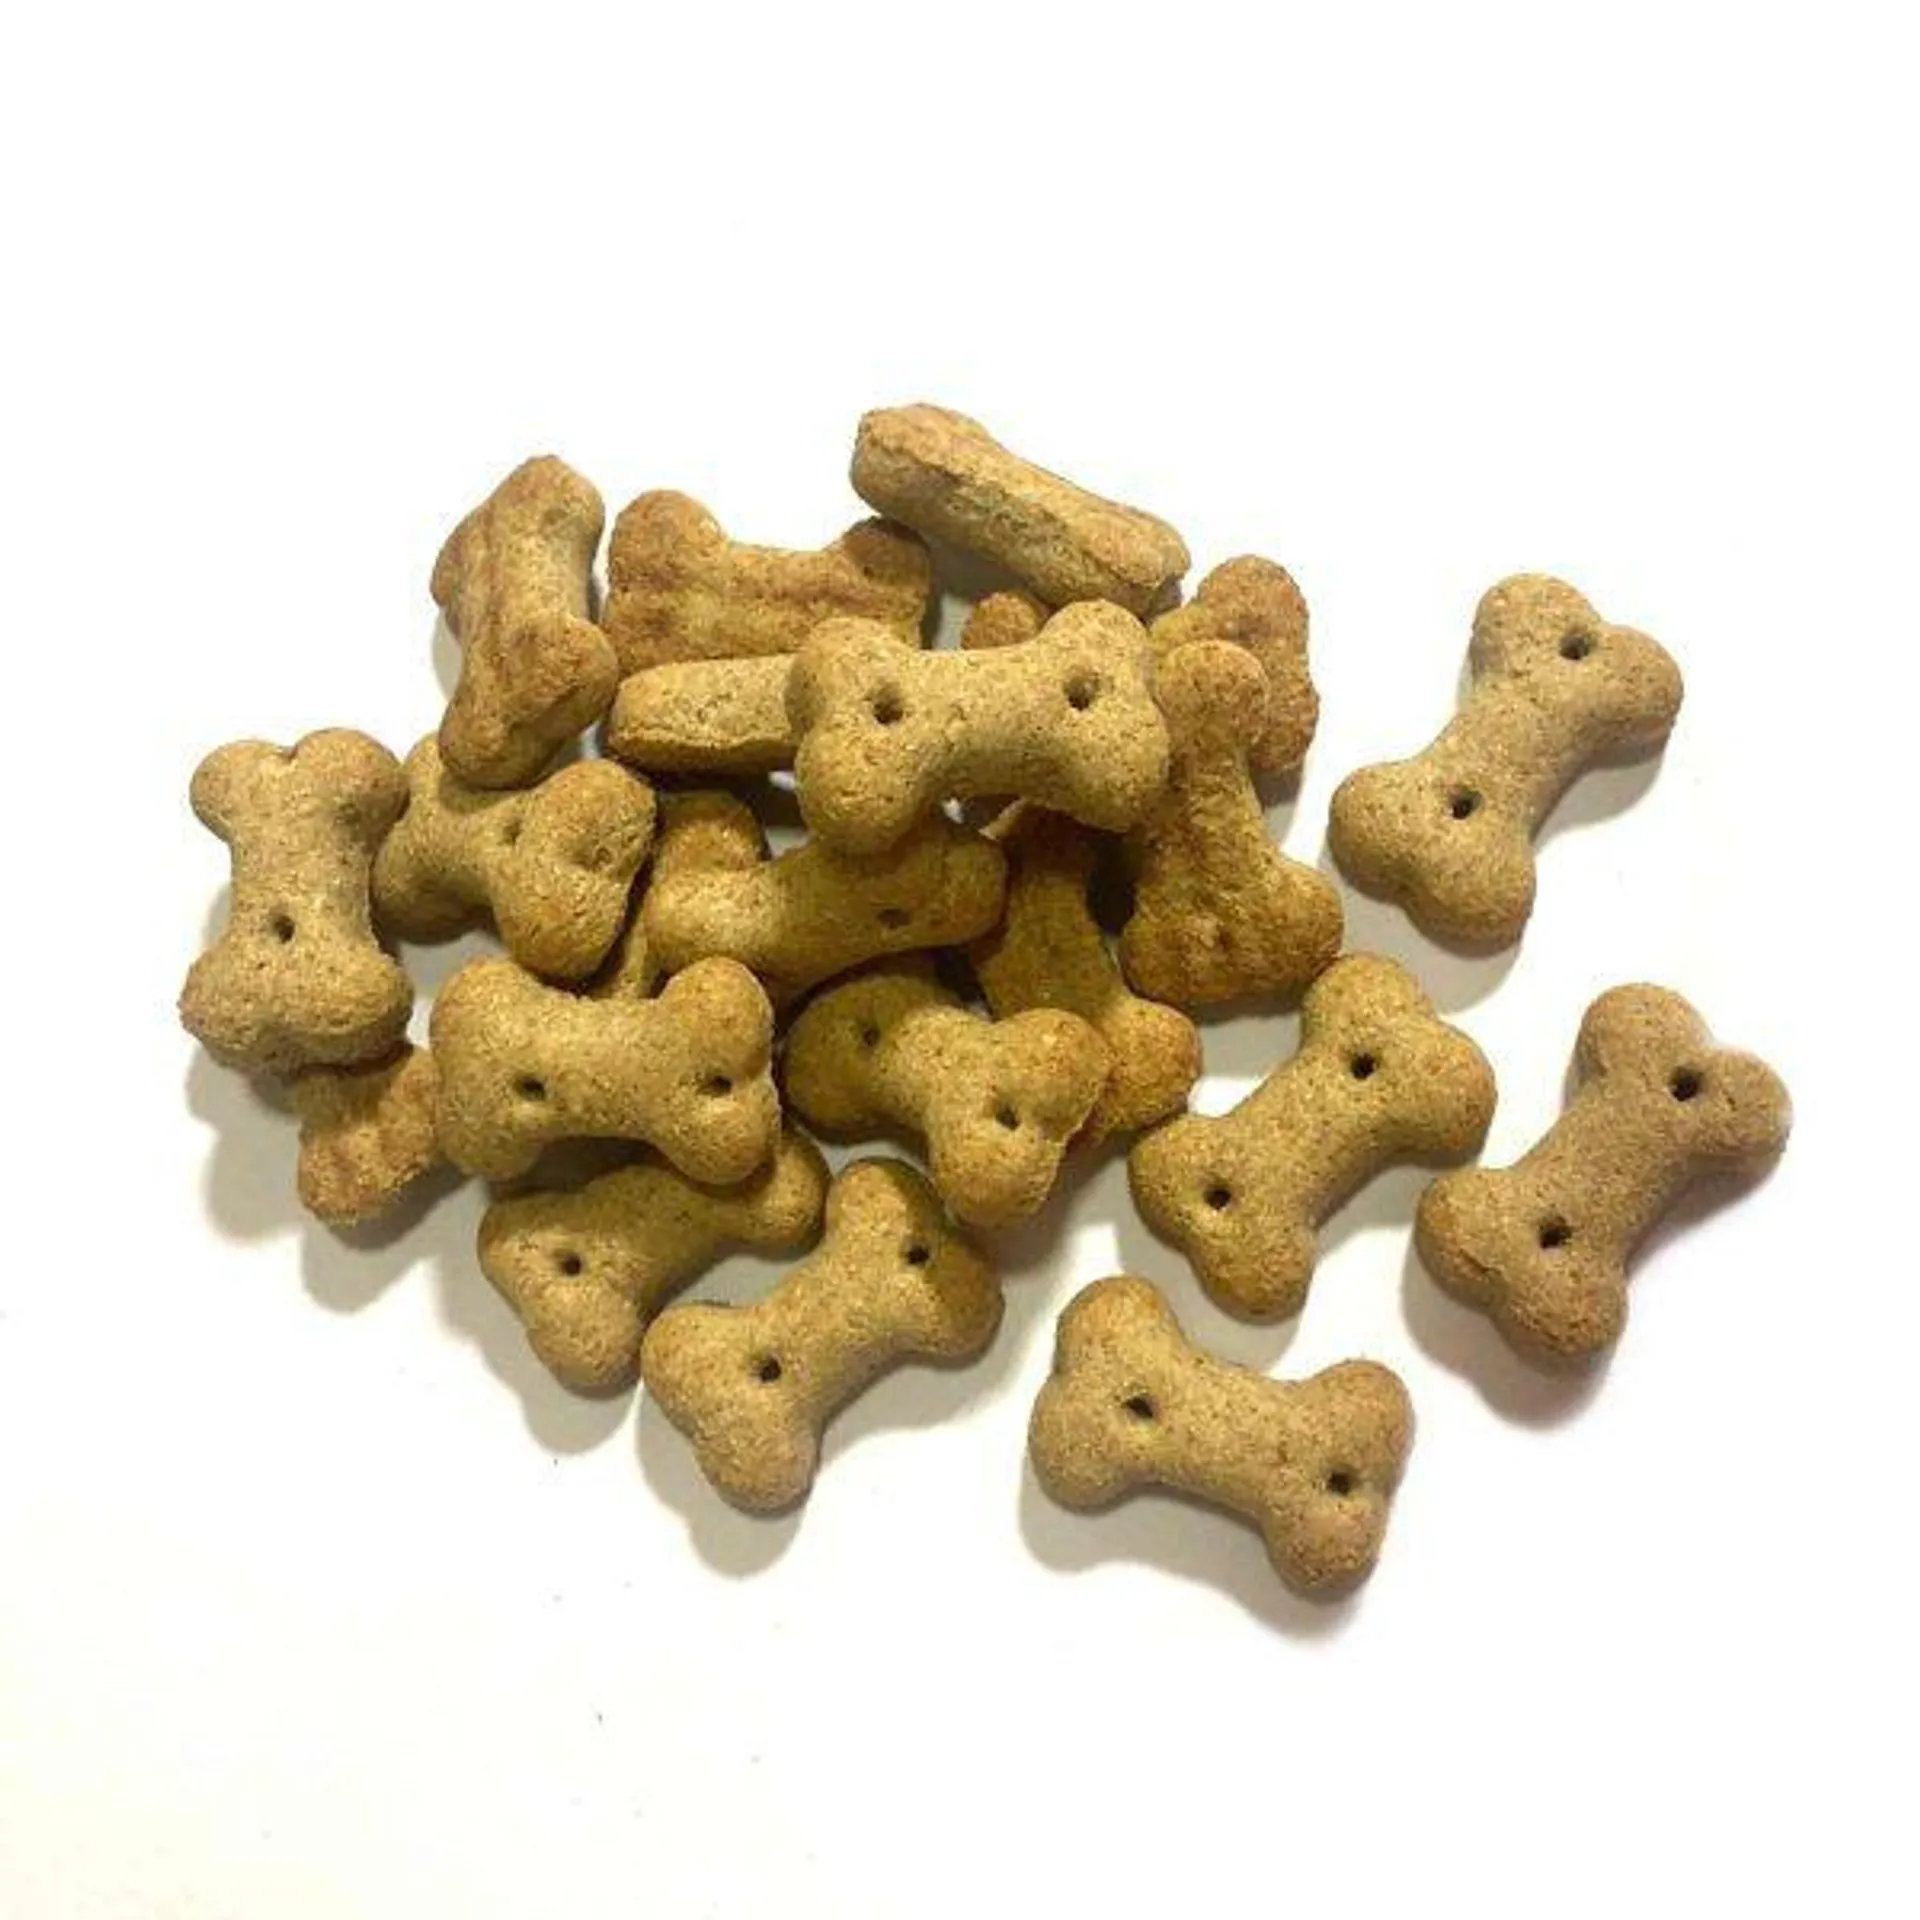 Galleta granel perro adulto mini y pequeño 20 unidades